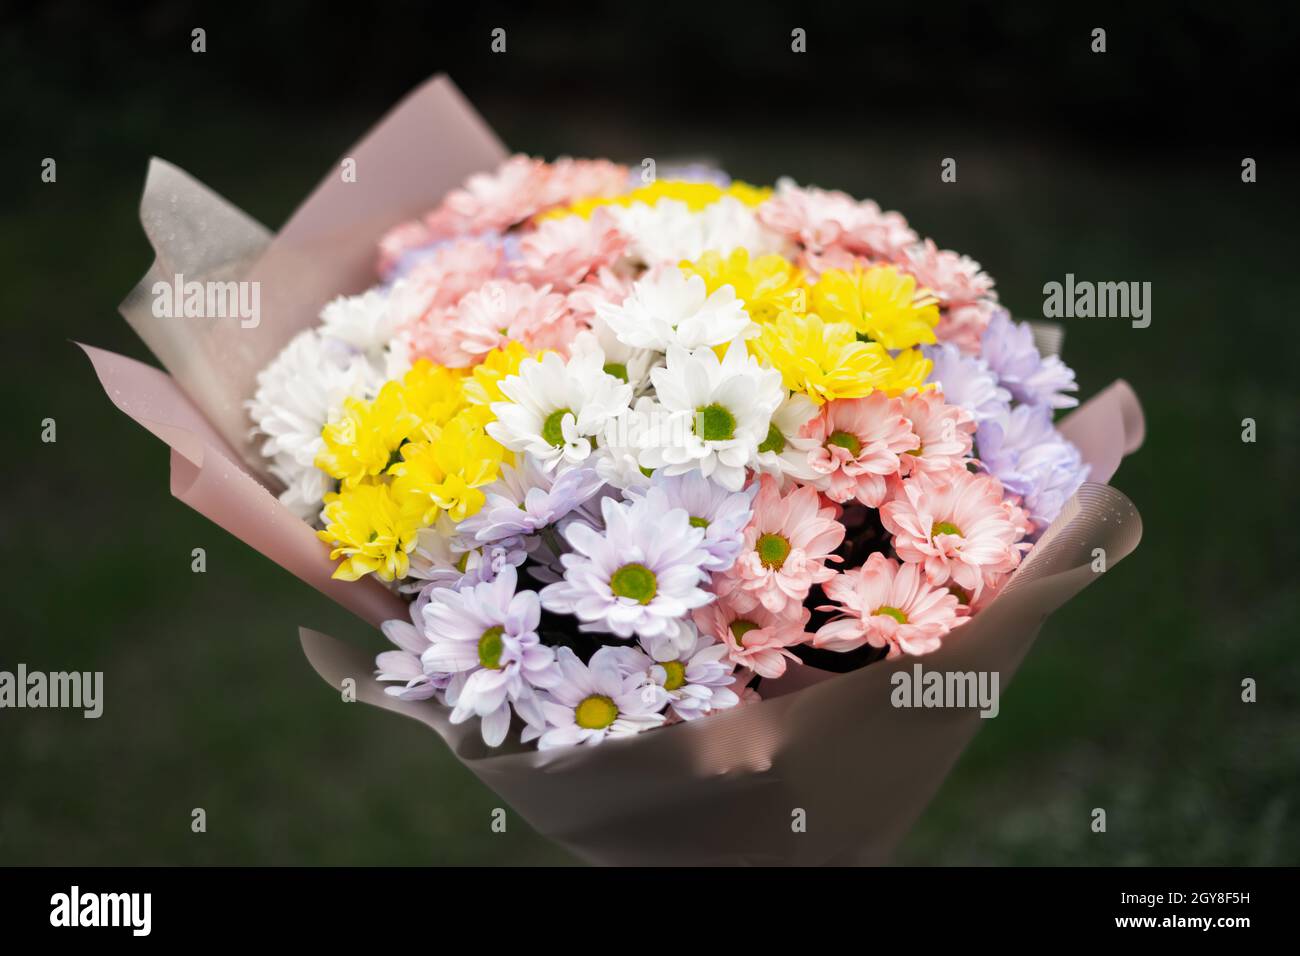 Ramo de flores de colores pastel delicados y multicolor flores de crisantema. Concepto floral Foto de stock